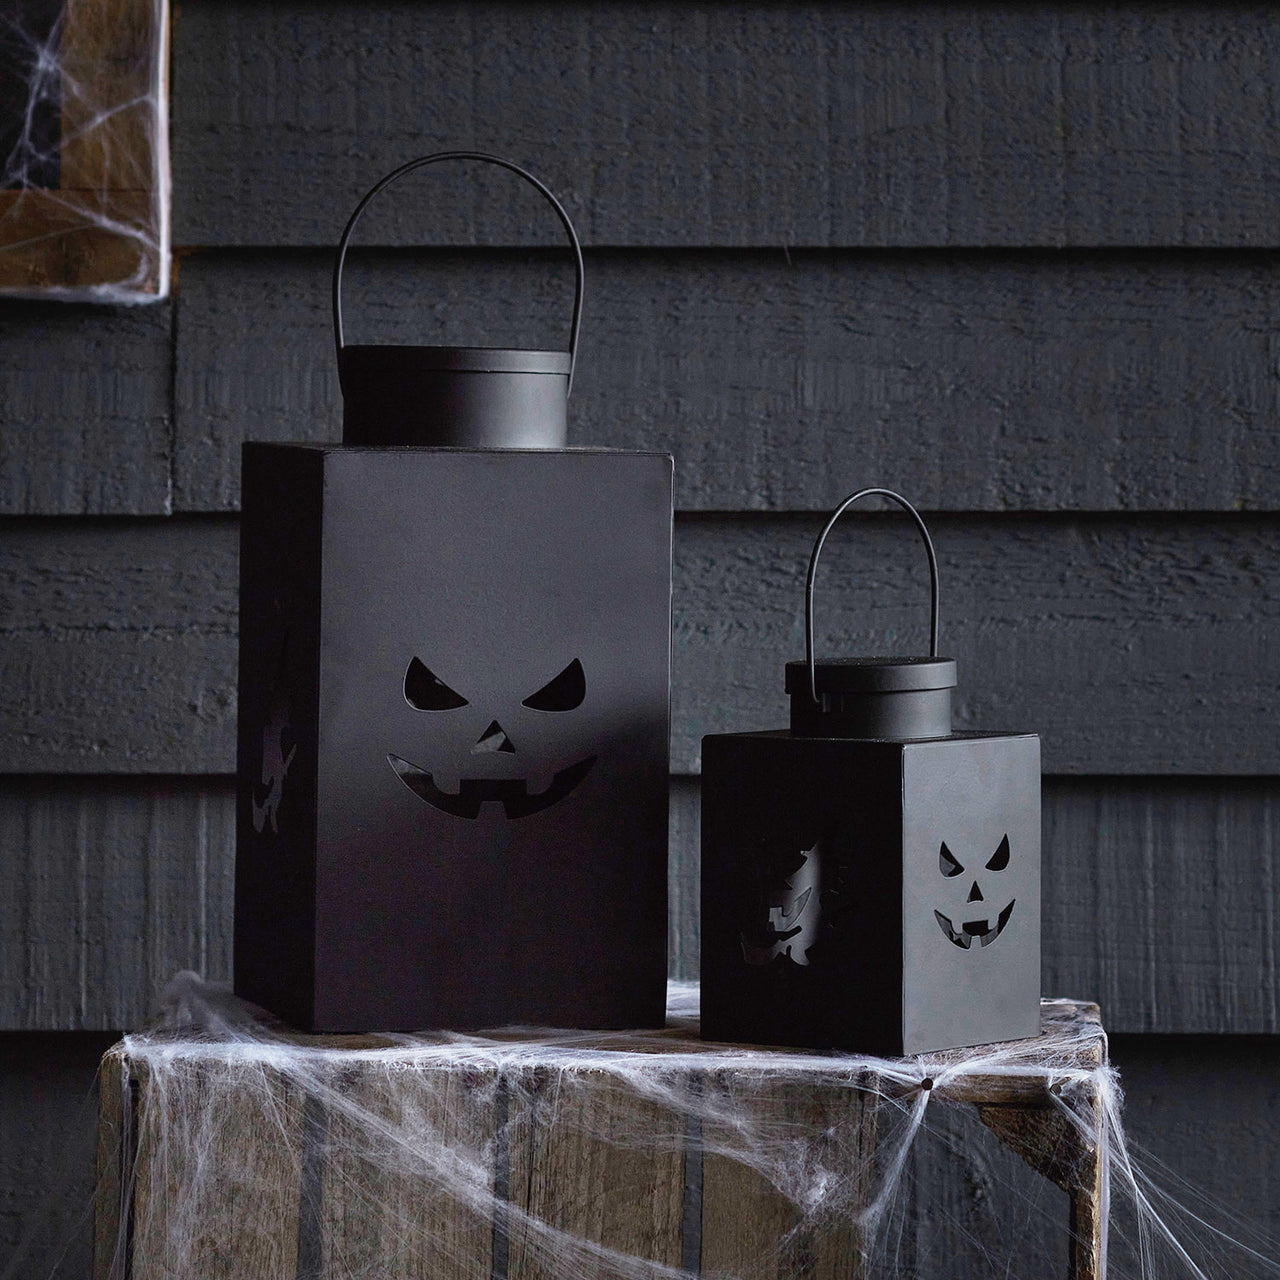 Duo de Lanternes d'Halloween en Métal Noir pour l'Extérieur